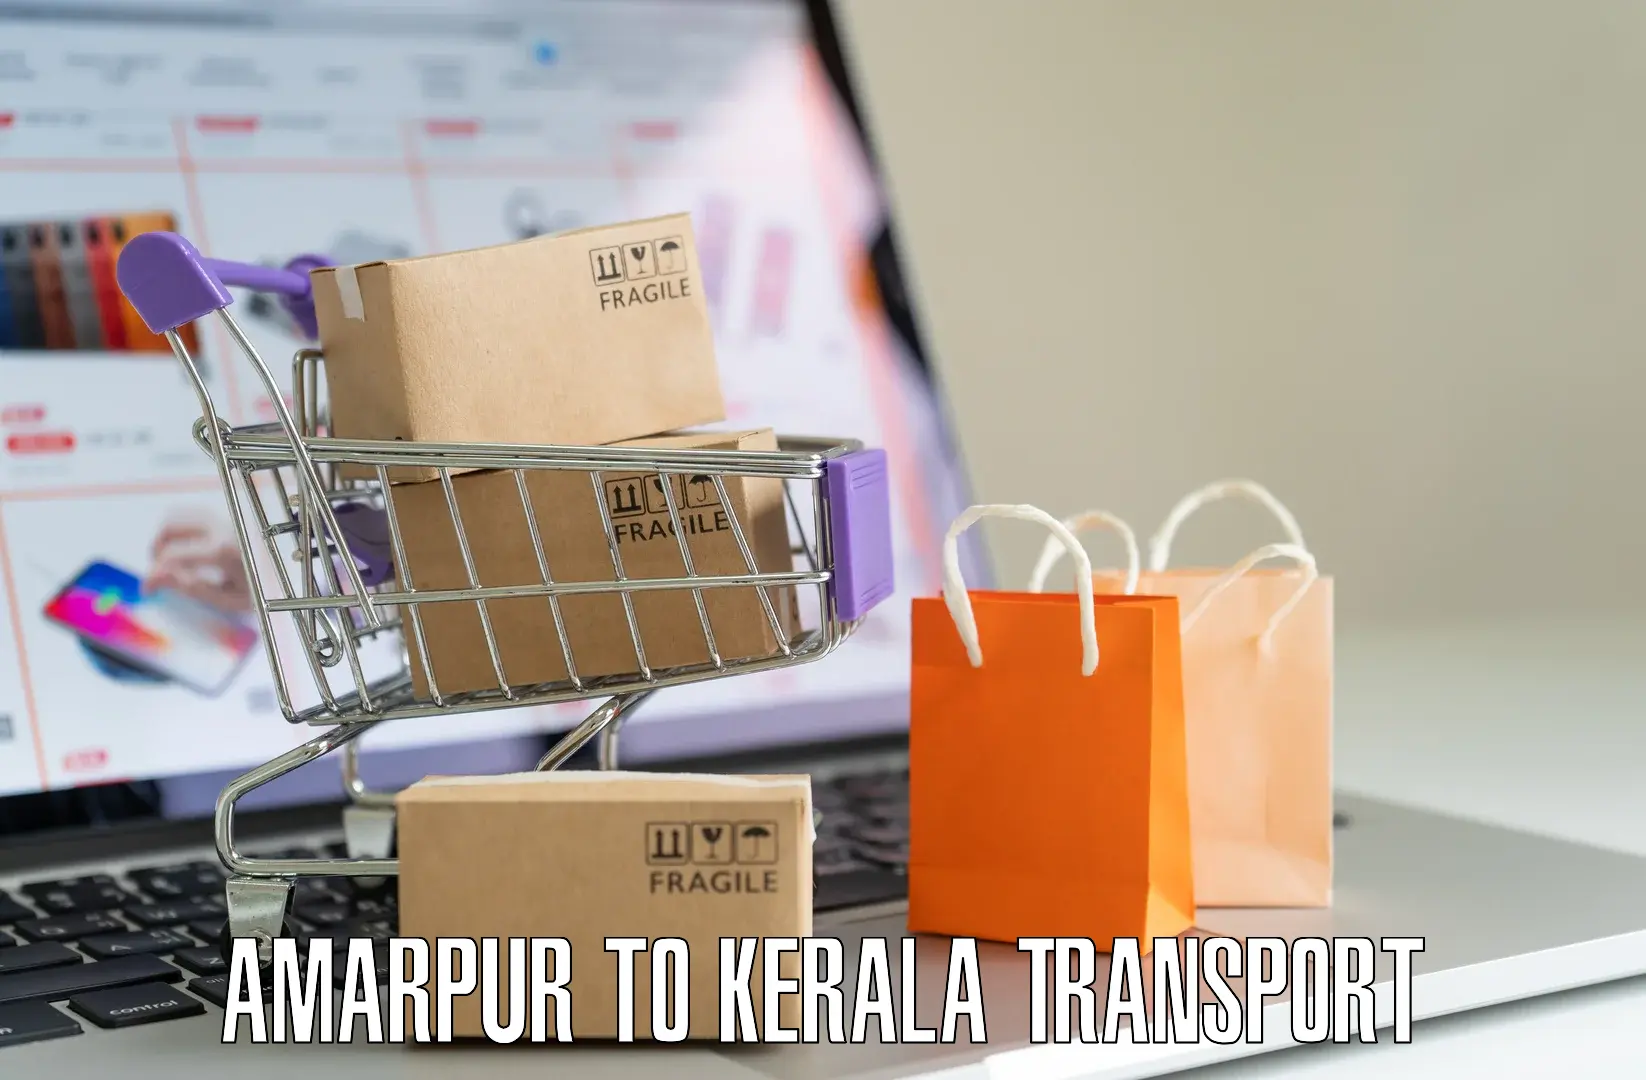 Interstate transport services Amarpur to Neyyattinkara